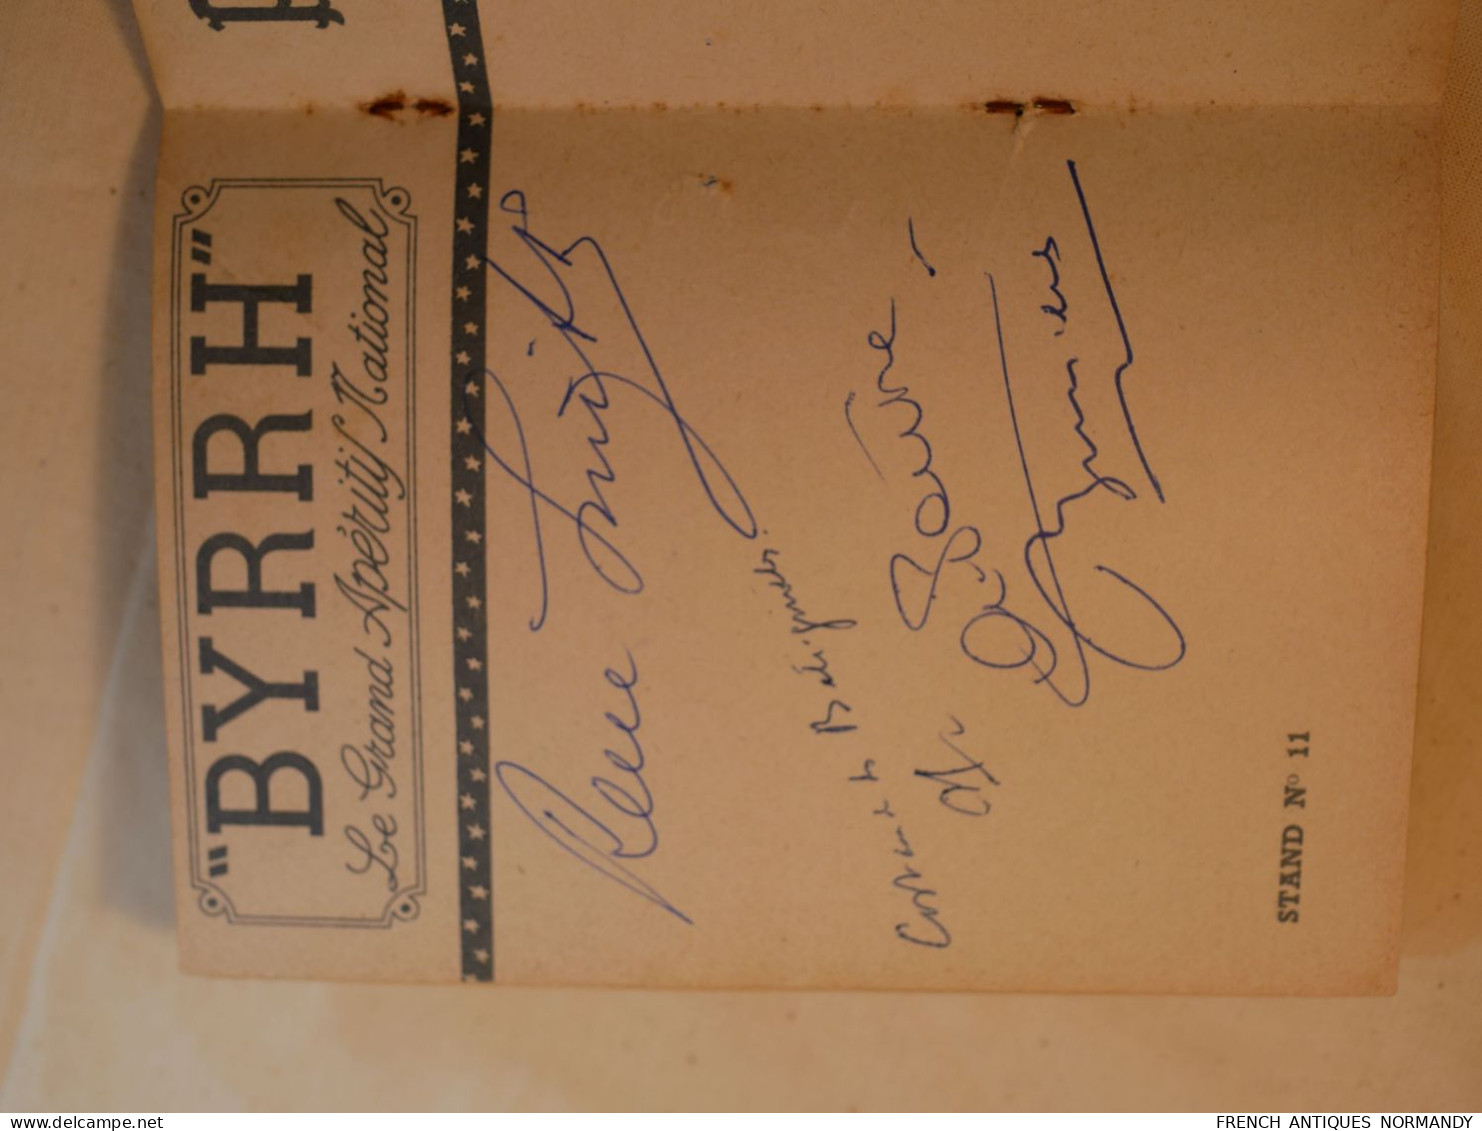 Livret carnet autographes LA KERMESSE AUX ETOILES 1952 signatures de grandes vedettes célébrités au bénéfice 2ième DB